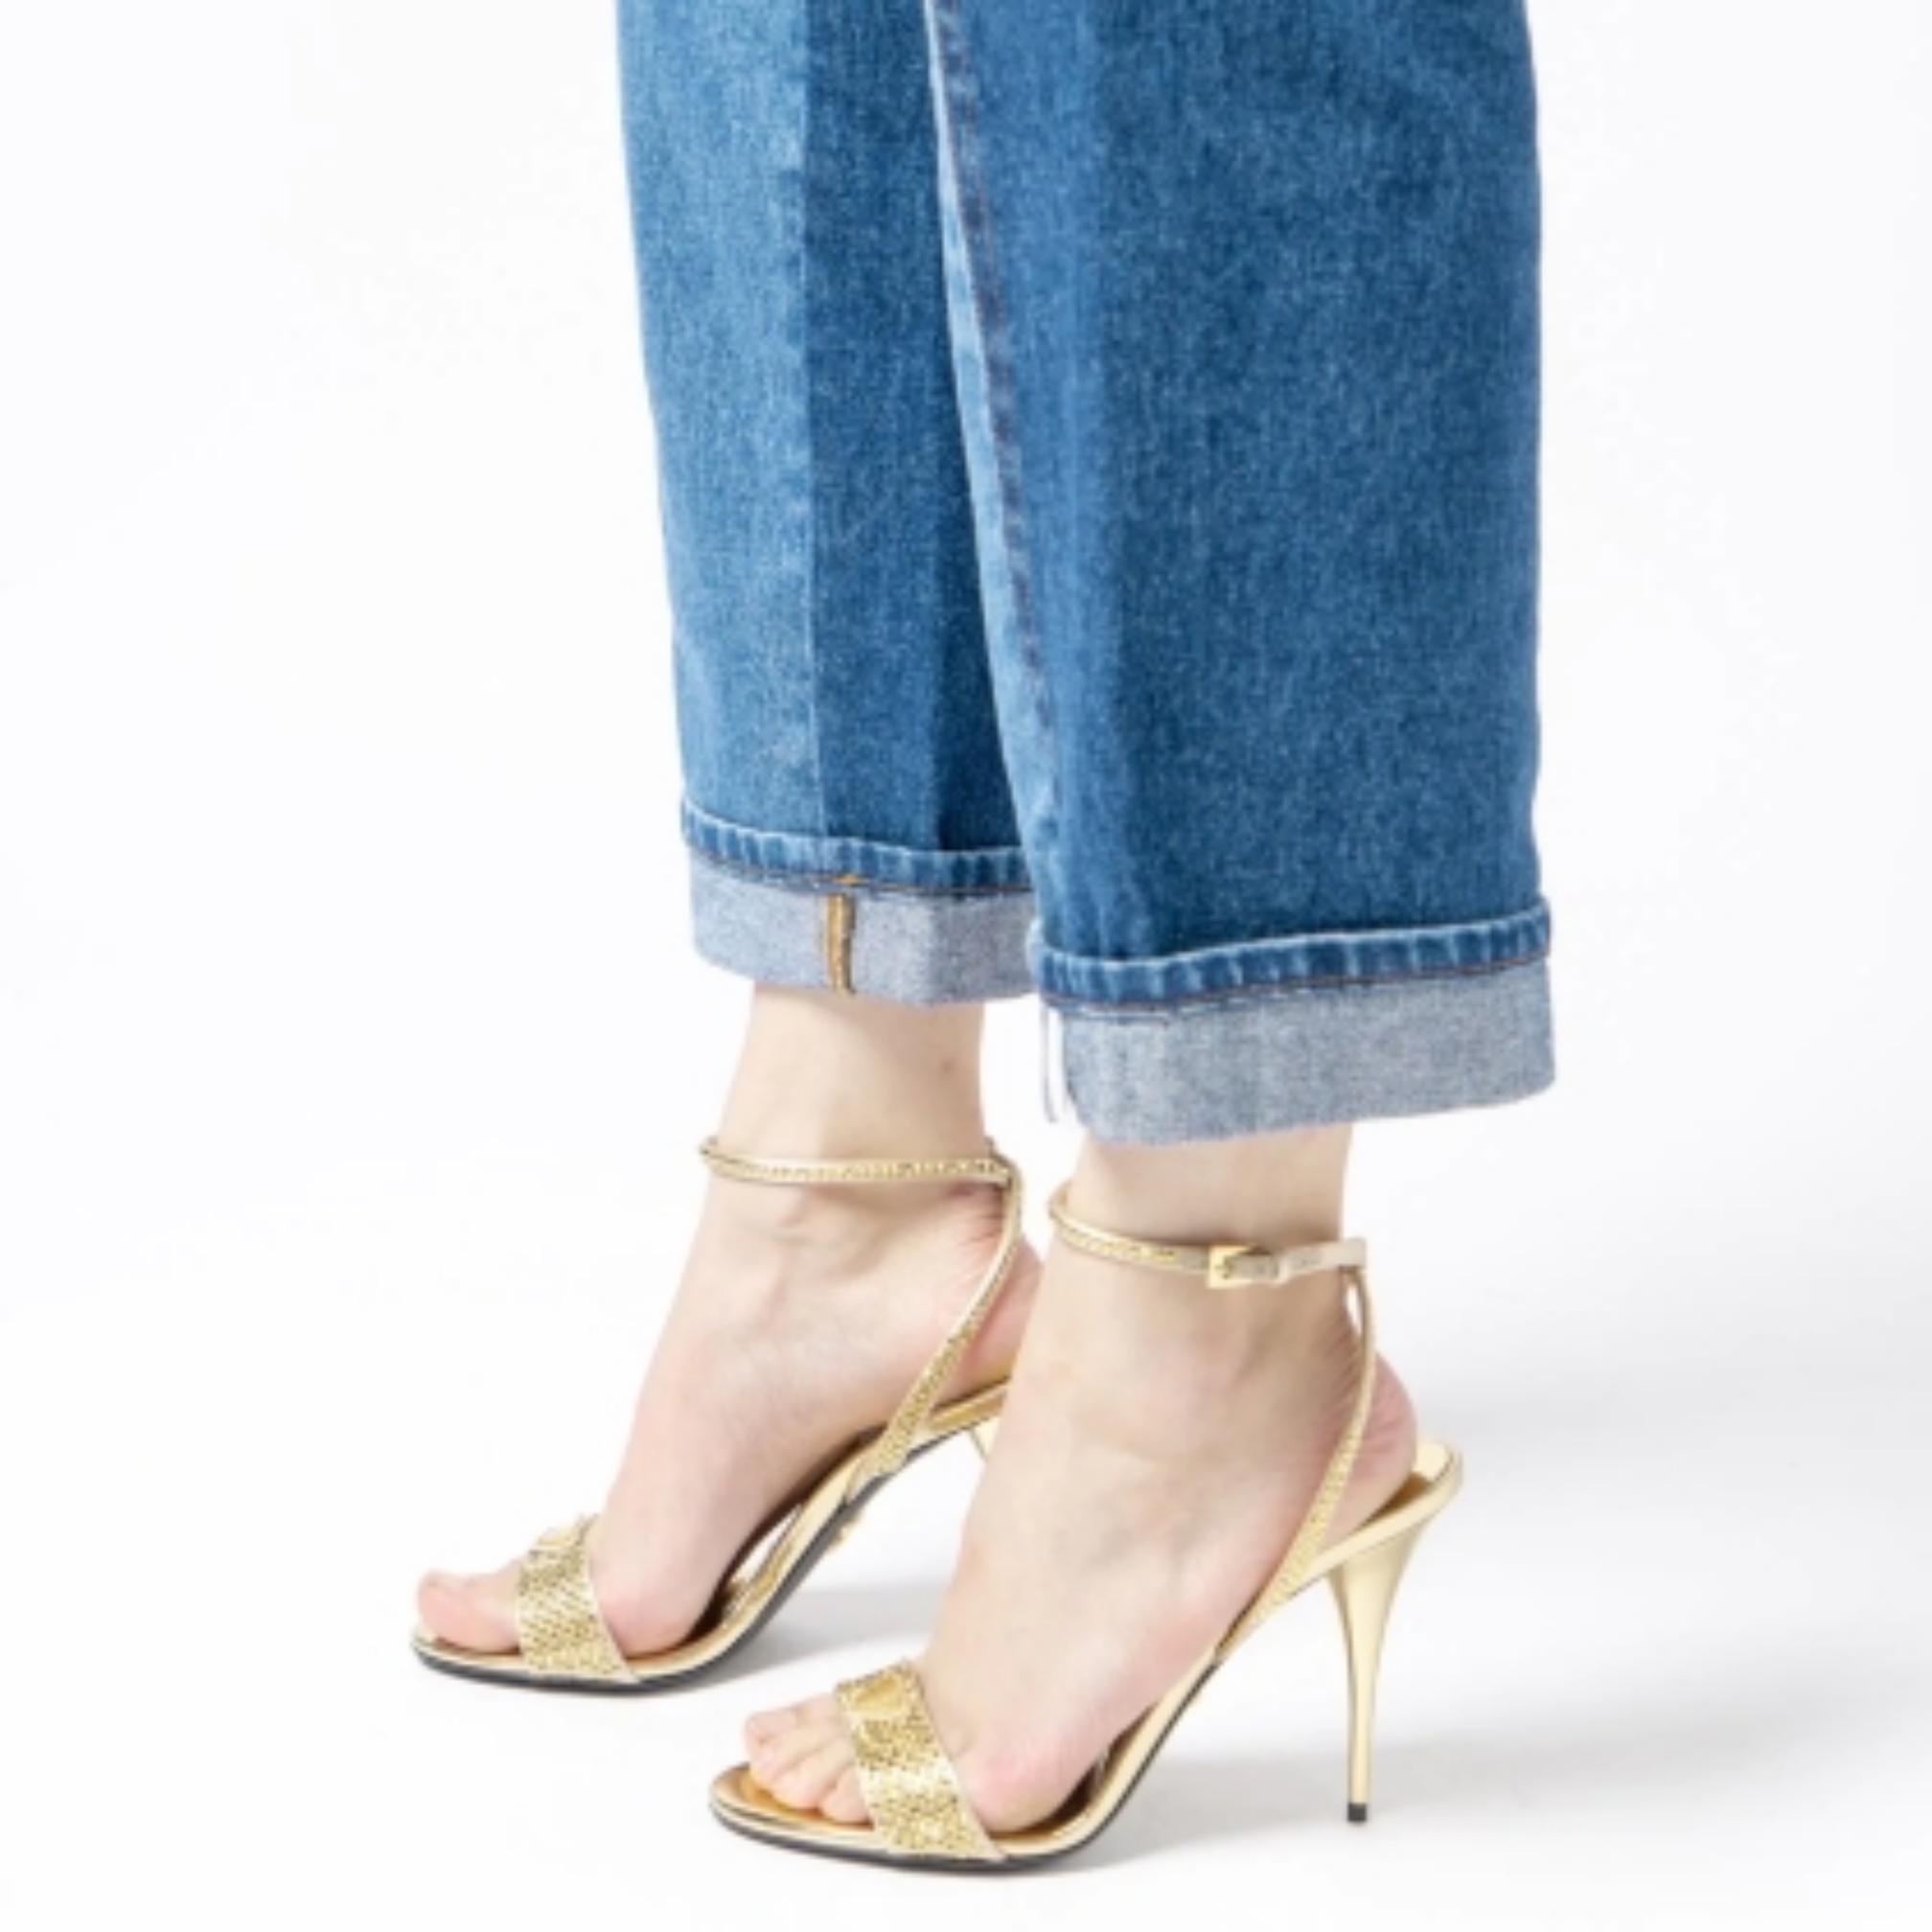 Prada Satin Sandals Slingback Heels with Crystal Embellished Platinum Gold